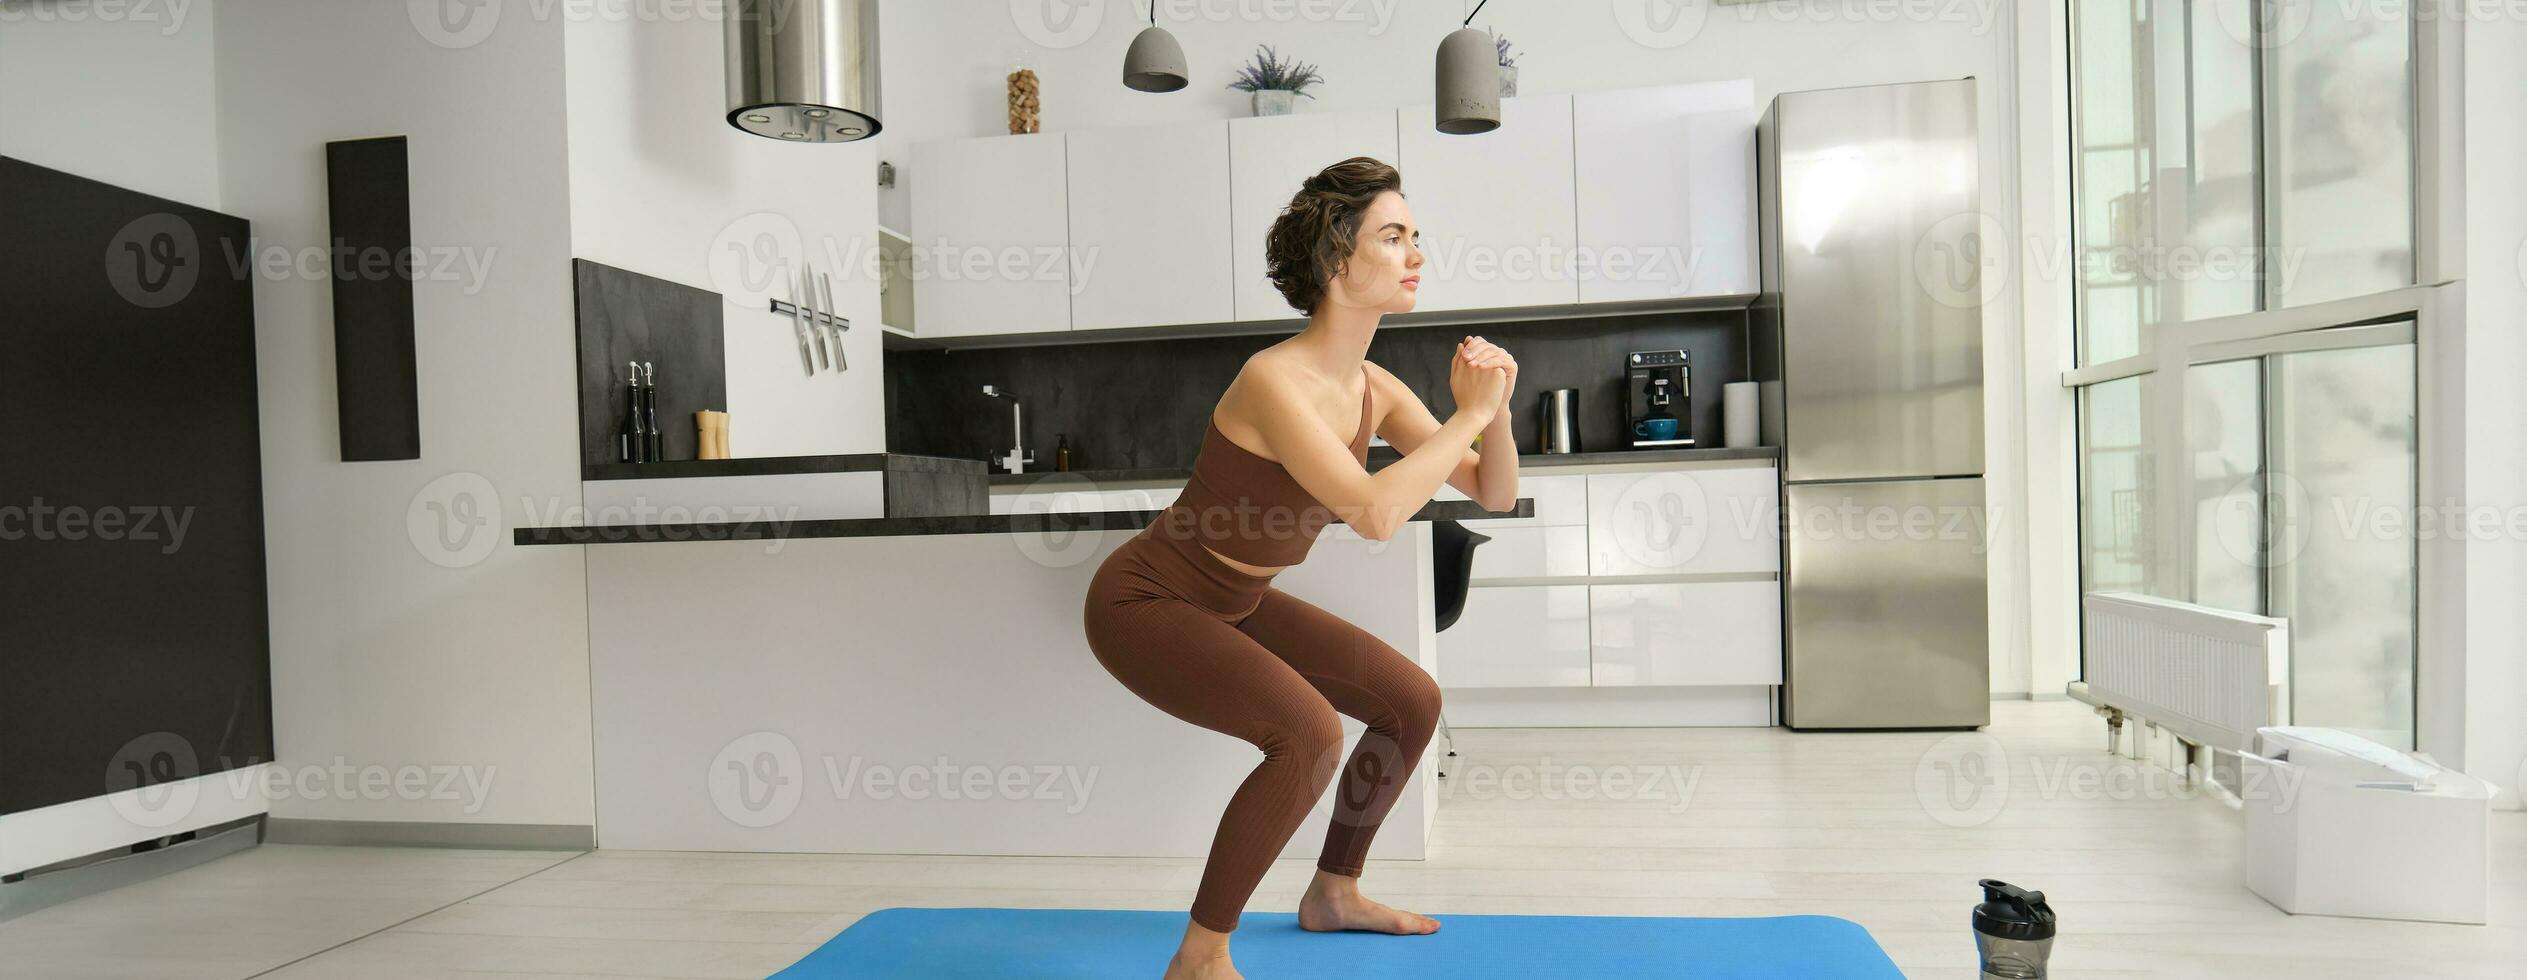 Academia às lar. jovem mulher fazendo agachamentos dentro brilhante sala, exercite-se dentro de casa dentro roupa de esporte, fazendo exercícios em borracha ioga esteira foto